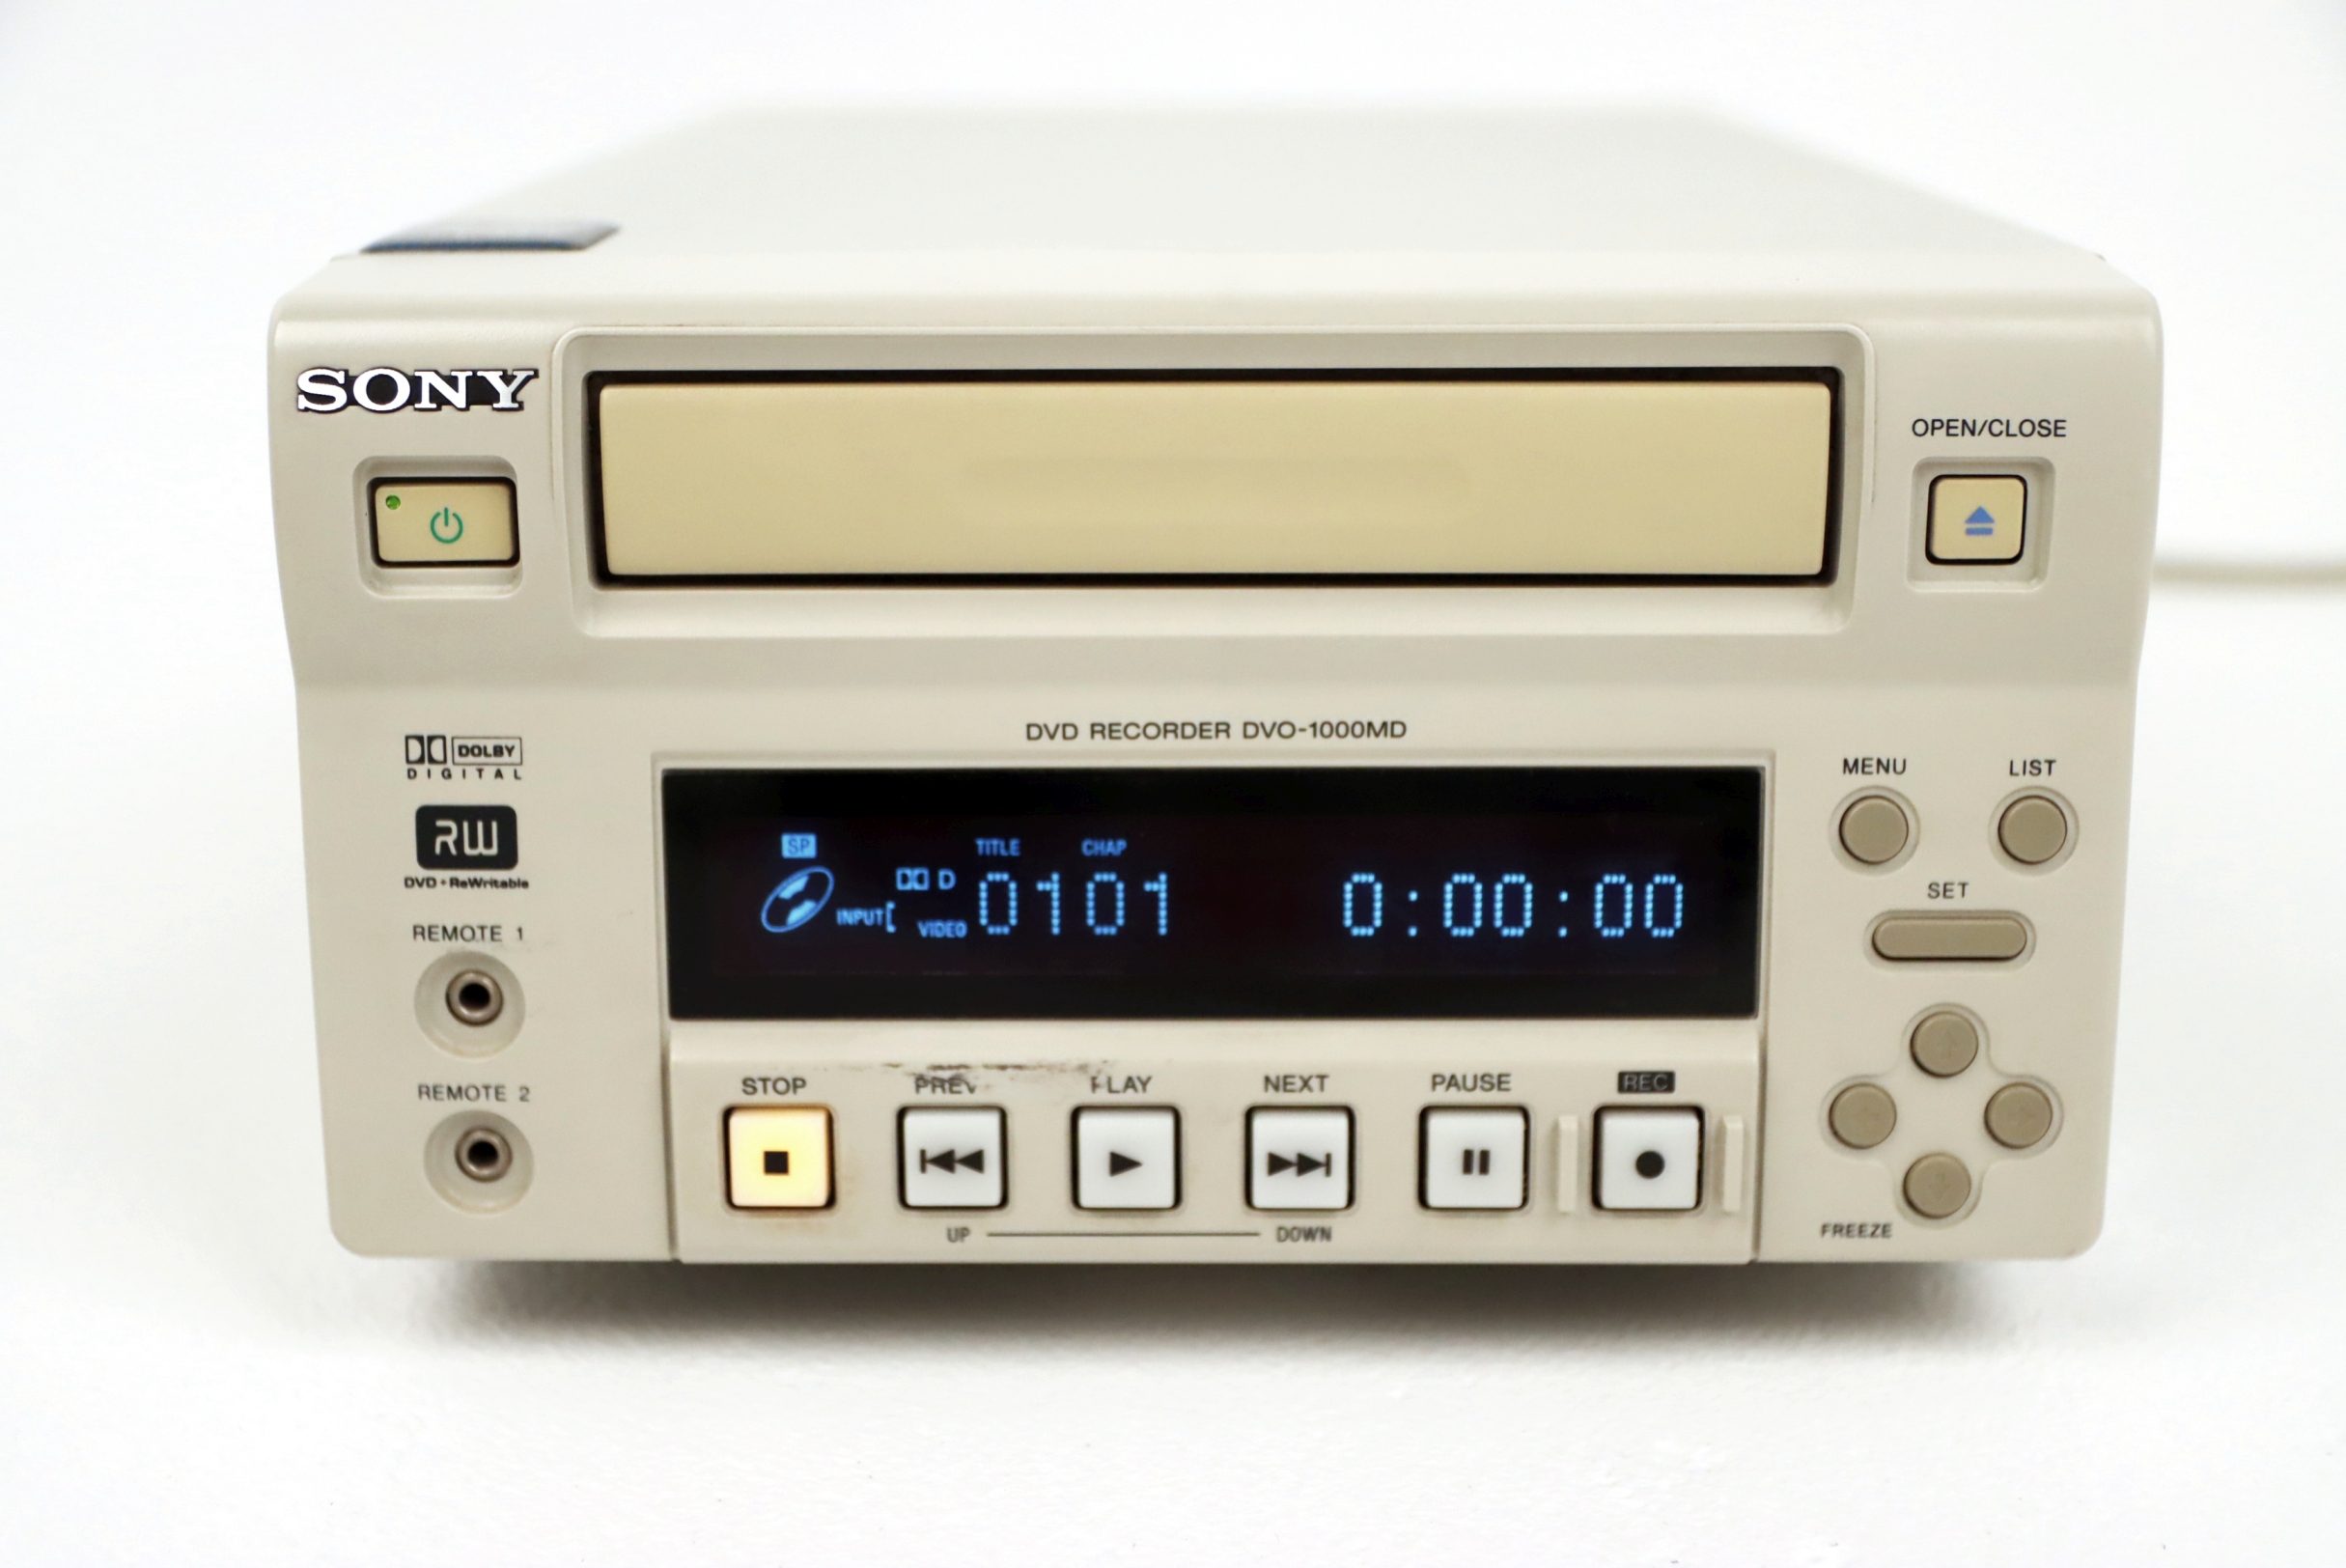 Videoprintery używane SONY DVO - 1000MD - Praiston rekondycjonowany